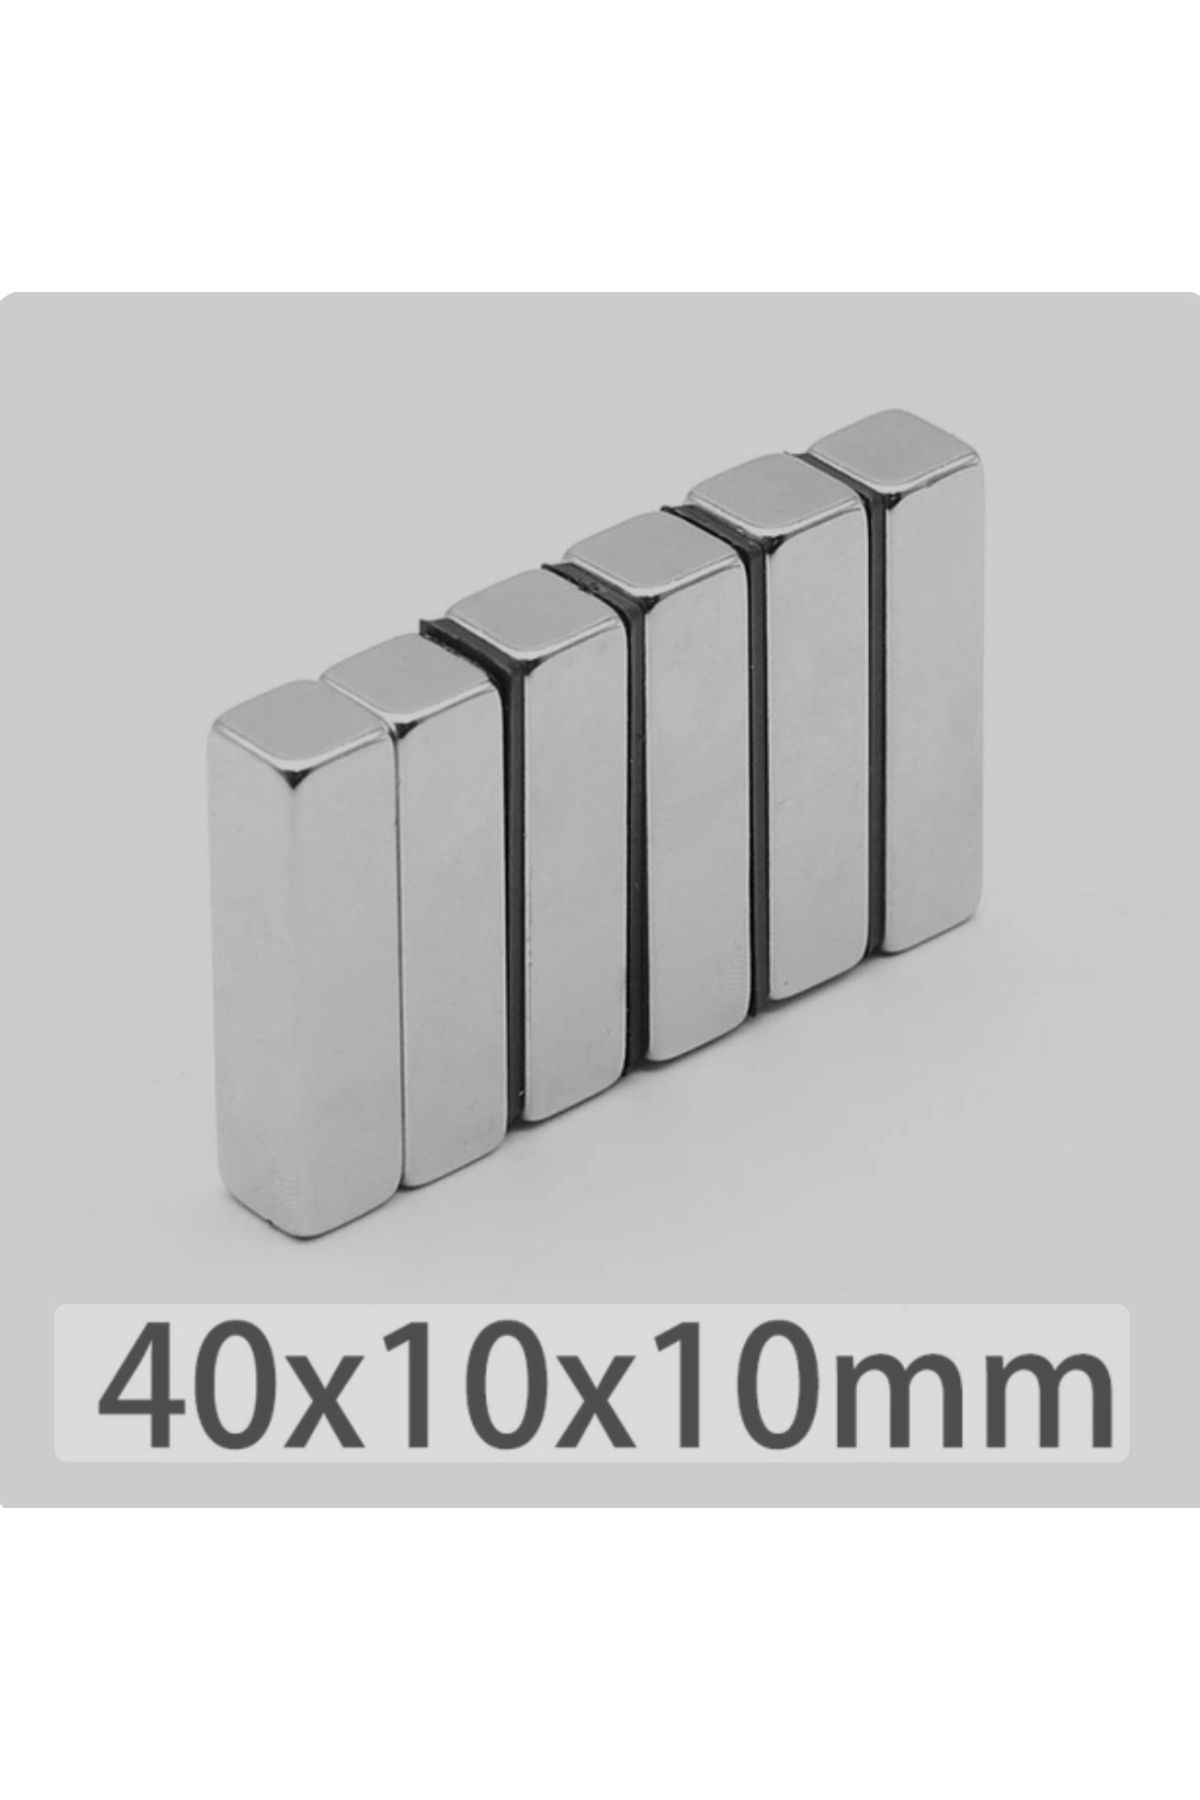 magnet market 10 Adet 40x10x10  Boy 40mm X En 10mm X Kalınlık 10mm Neodymium Magnet